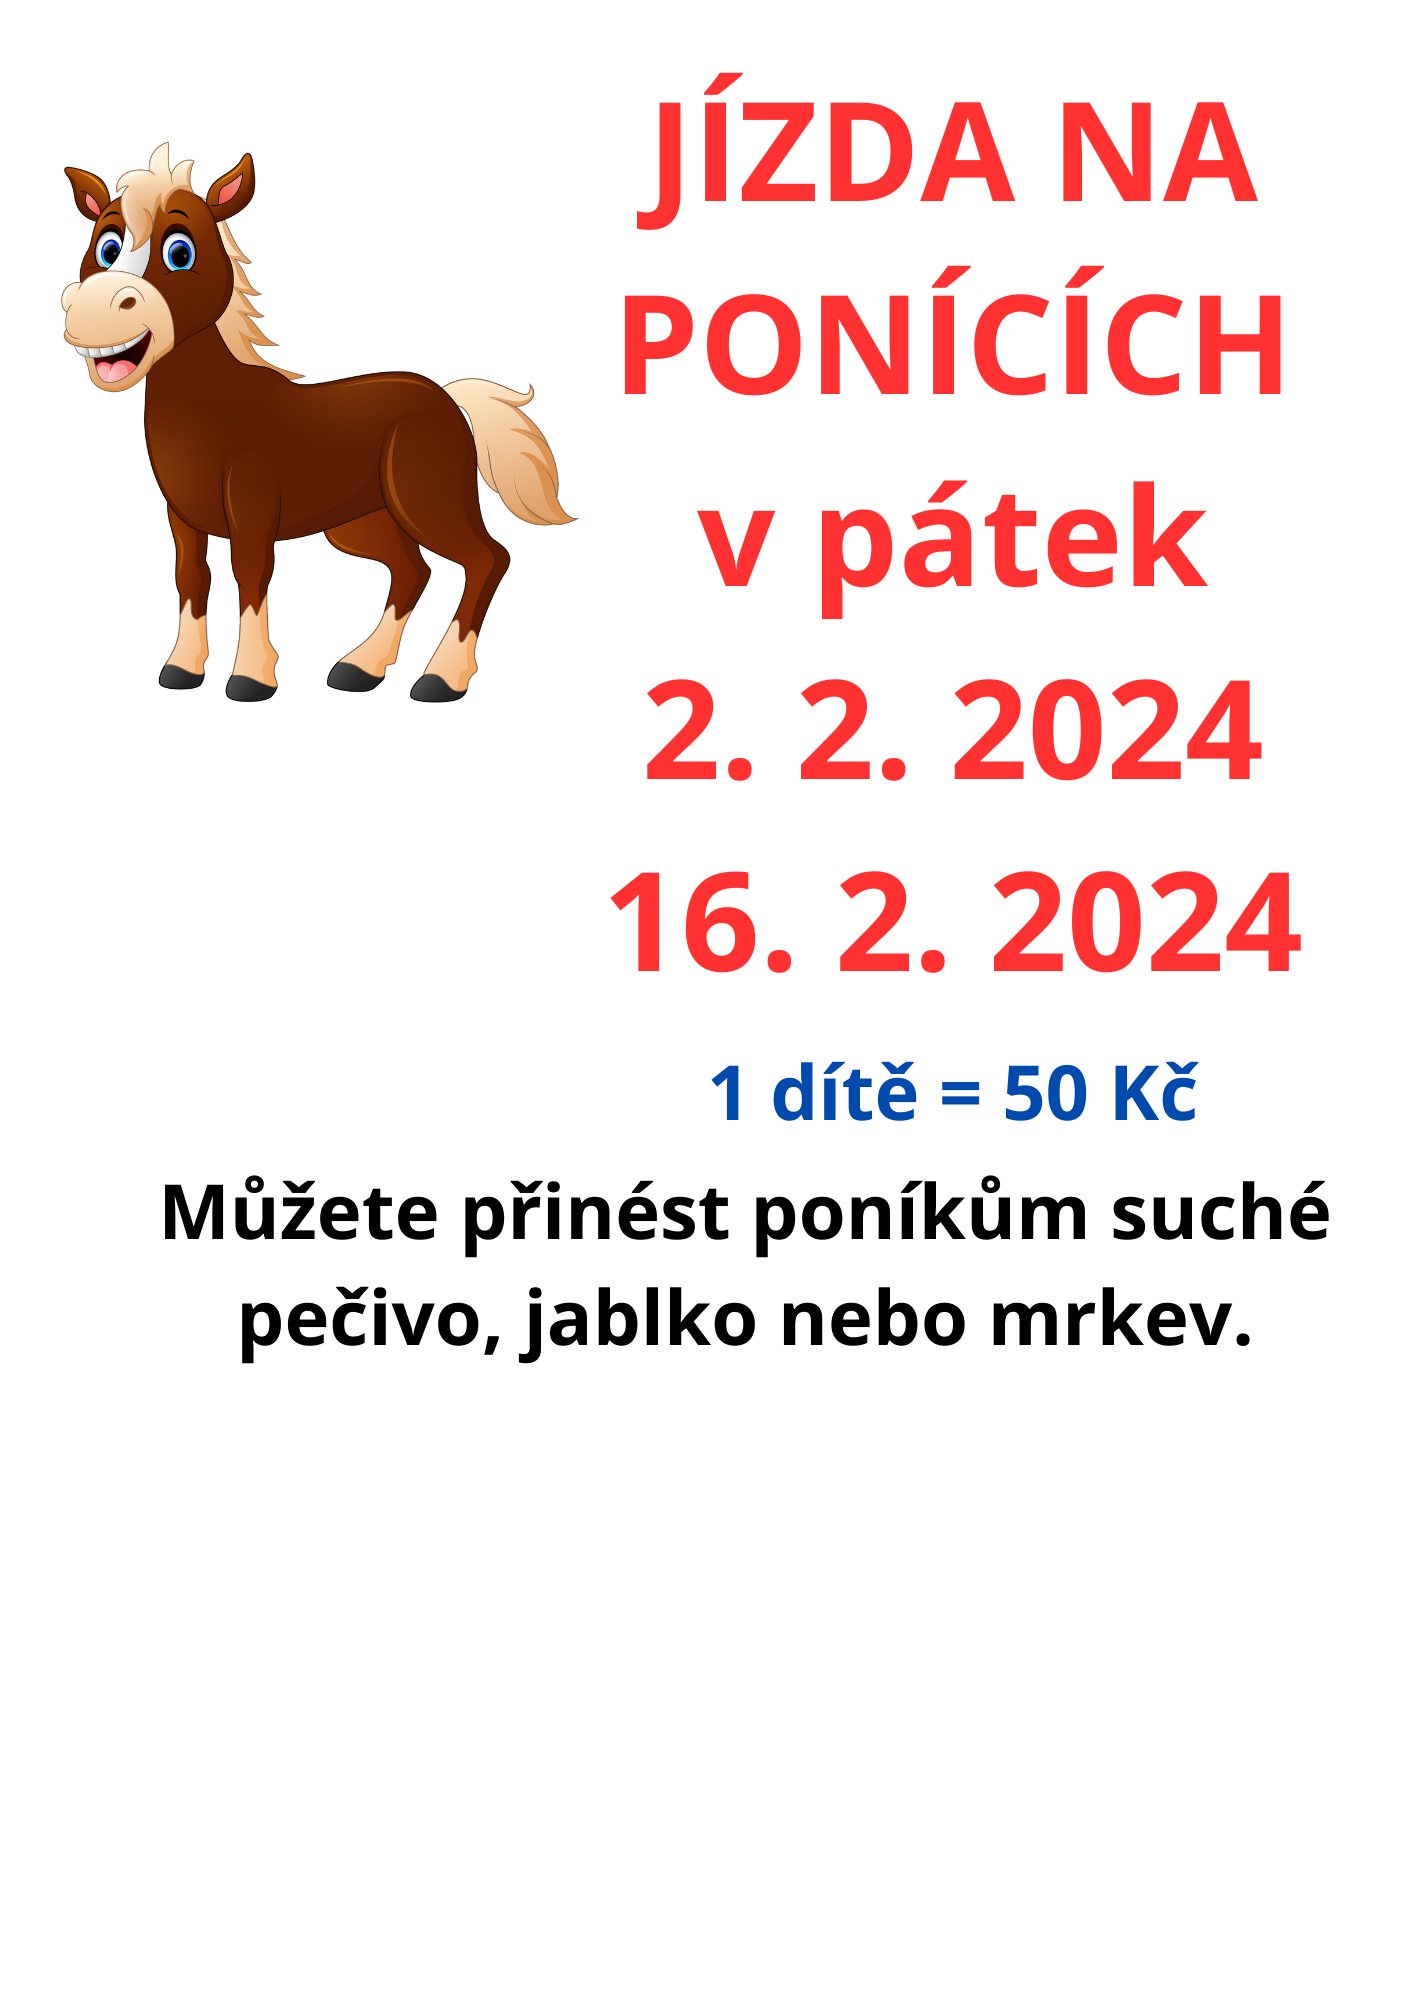 jizda_na_ponicich_v_patek_19._1._2024_(2).png (264 KB)